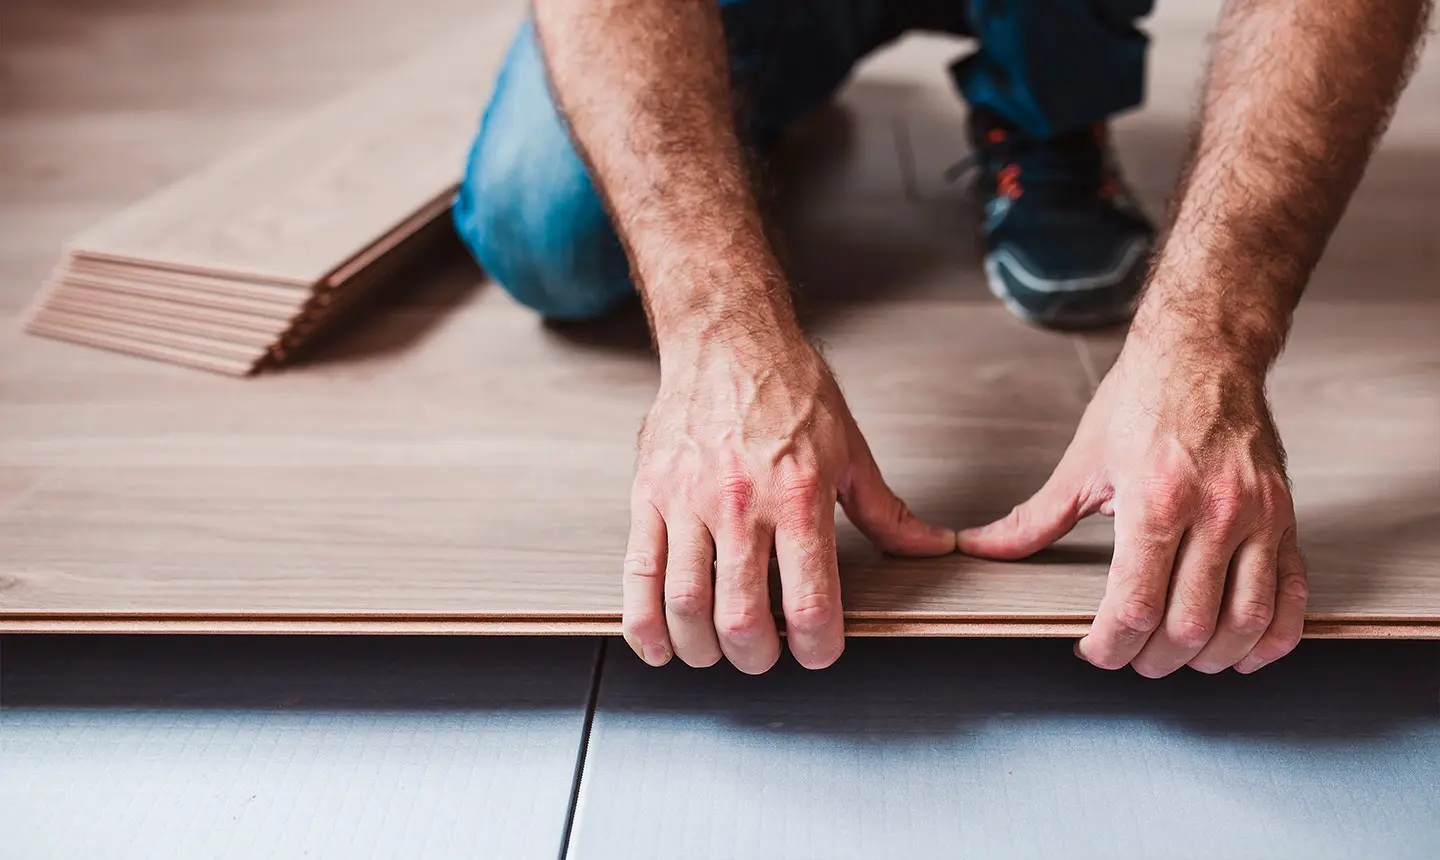 Repair Your Laminate Flooring With Alex